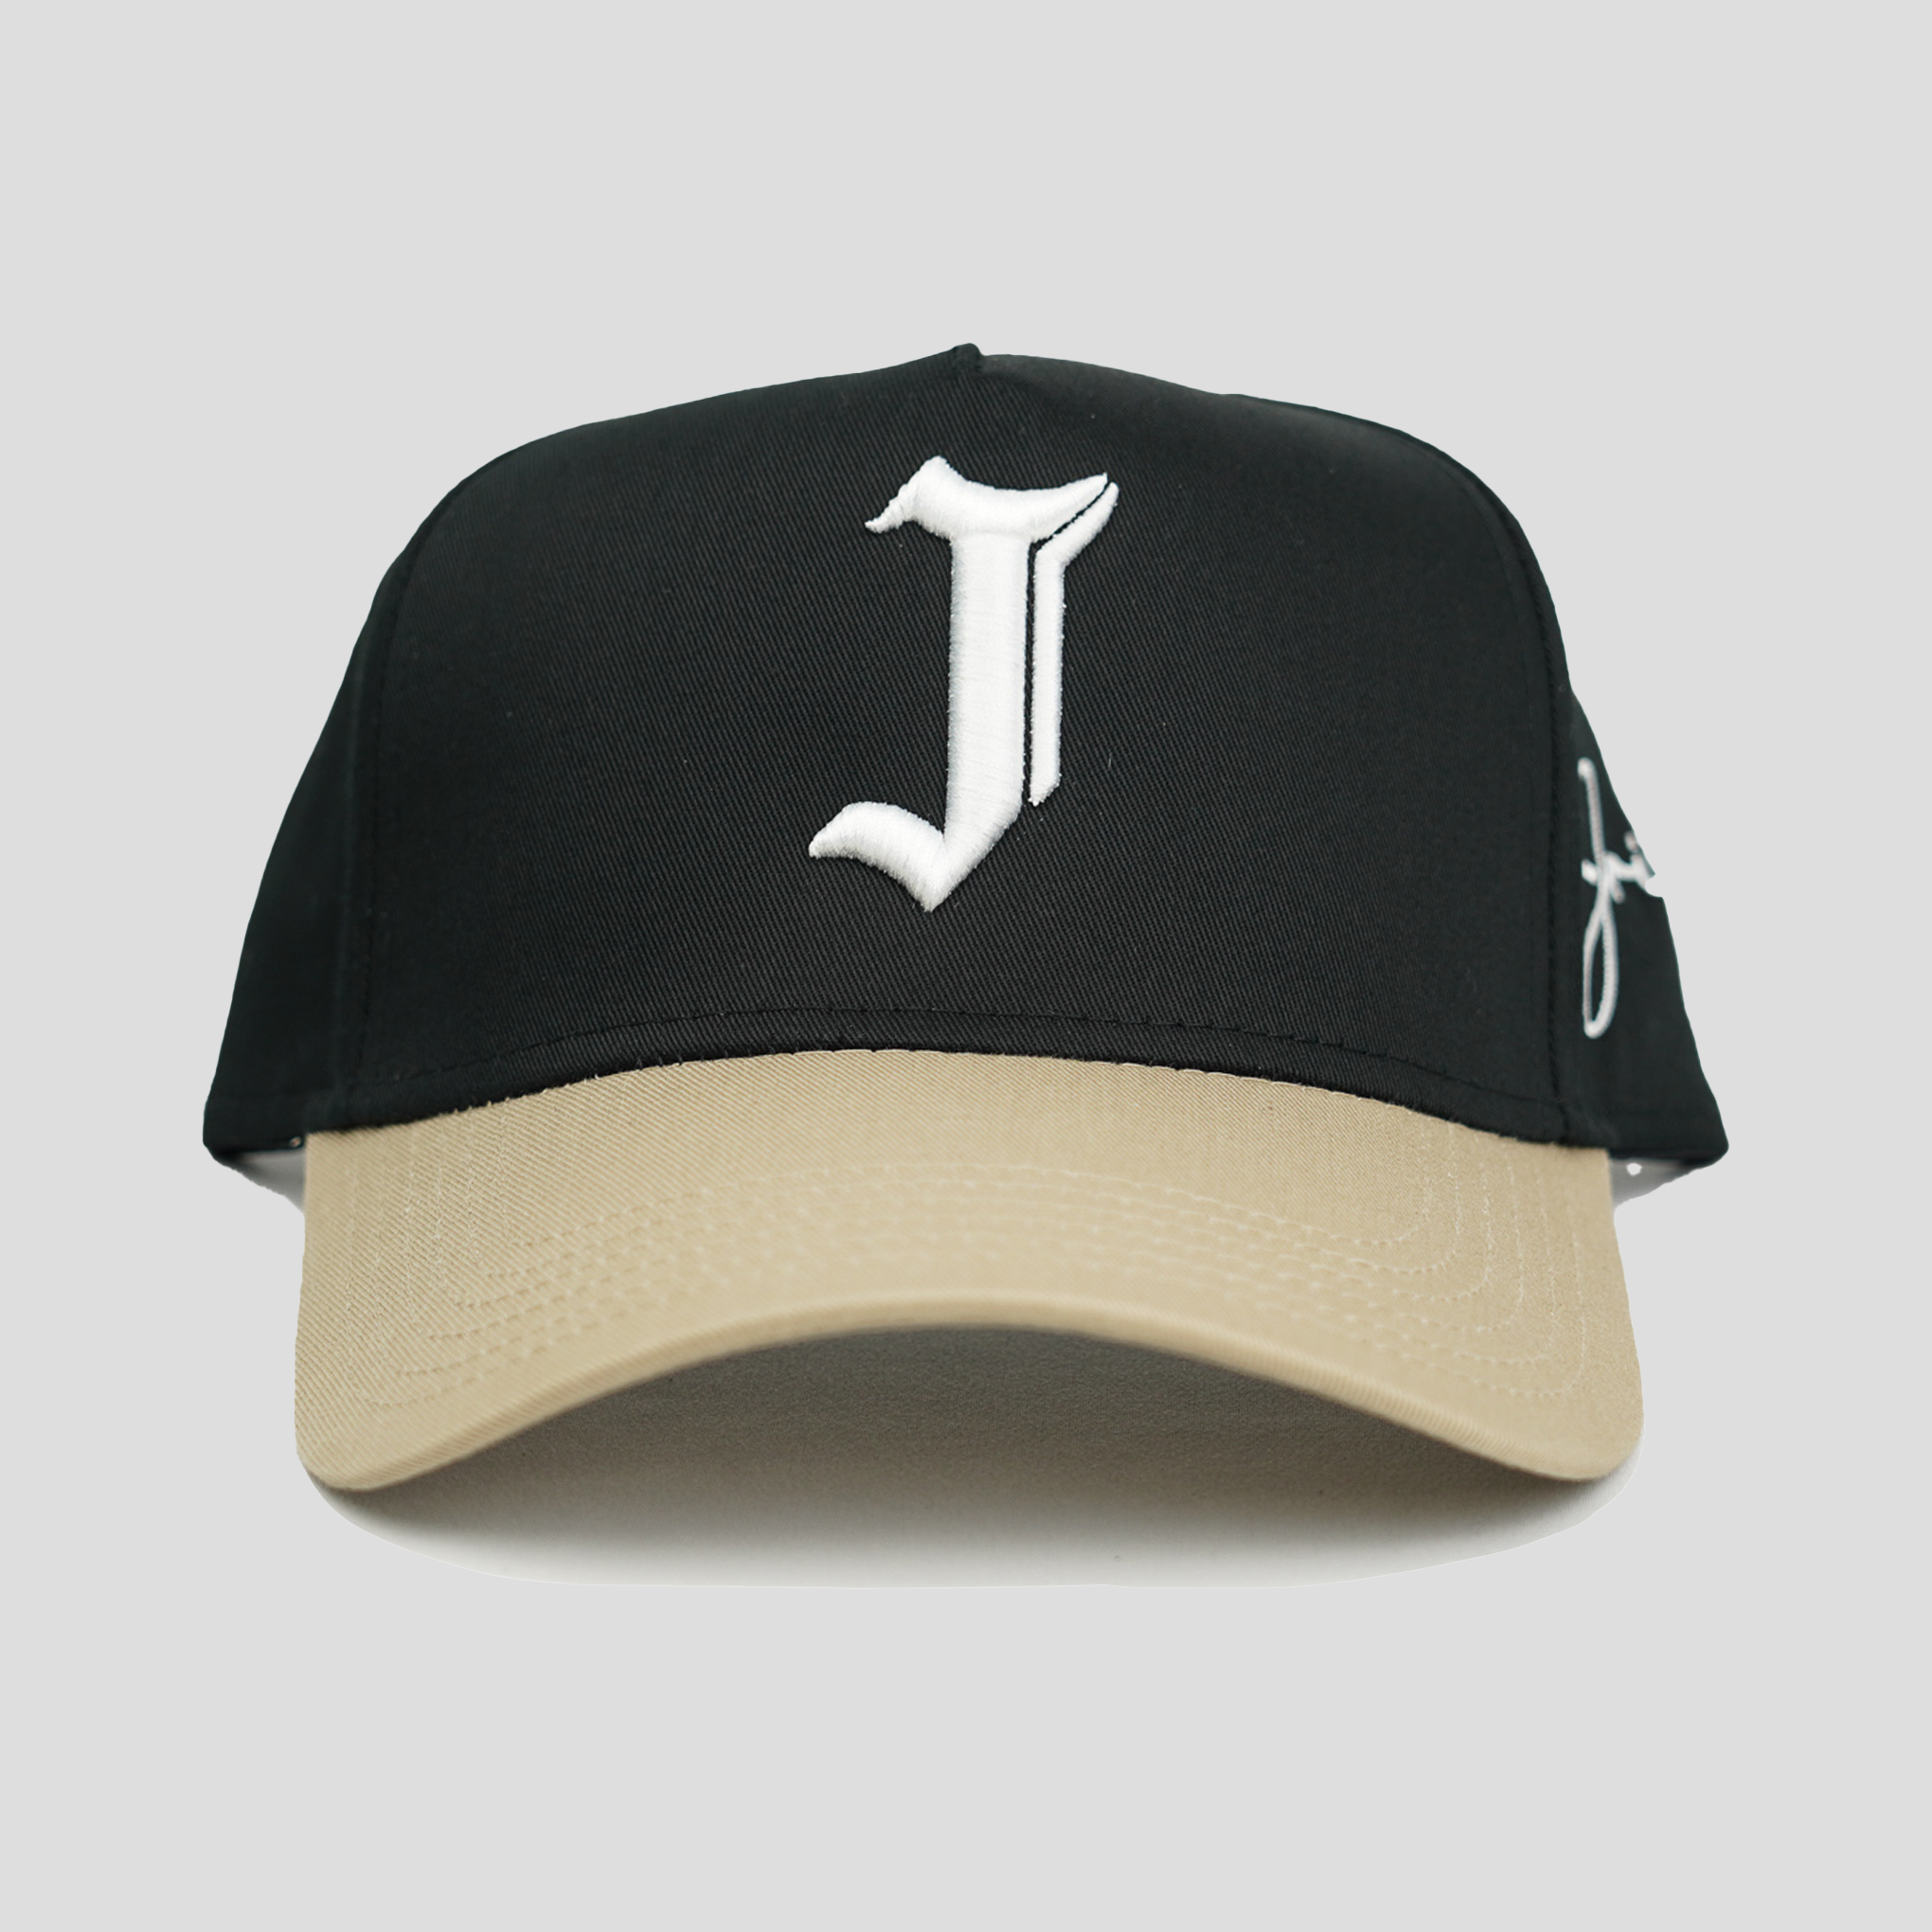 "J" Signature Snapback Hat (BLACK/KHAKI)